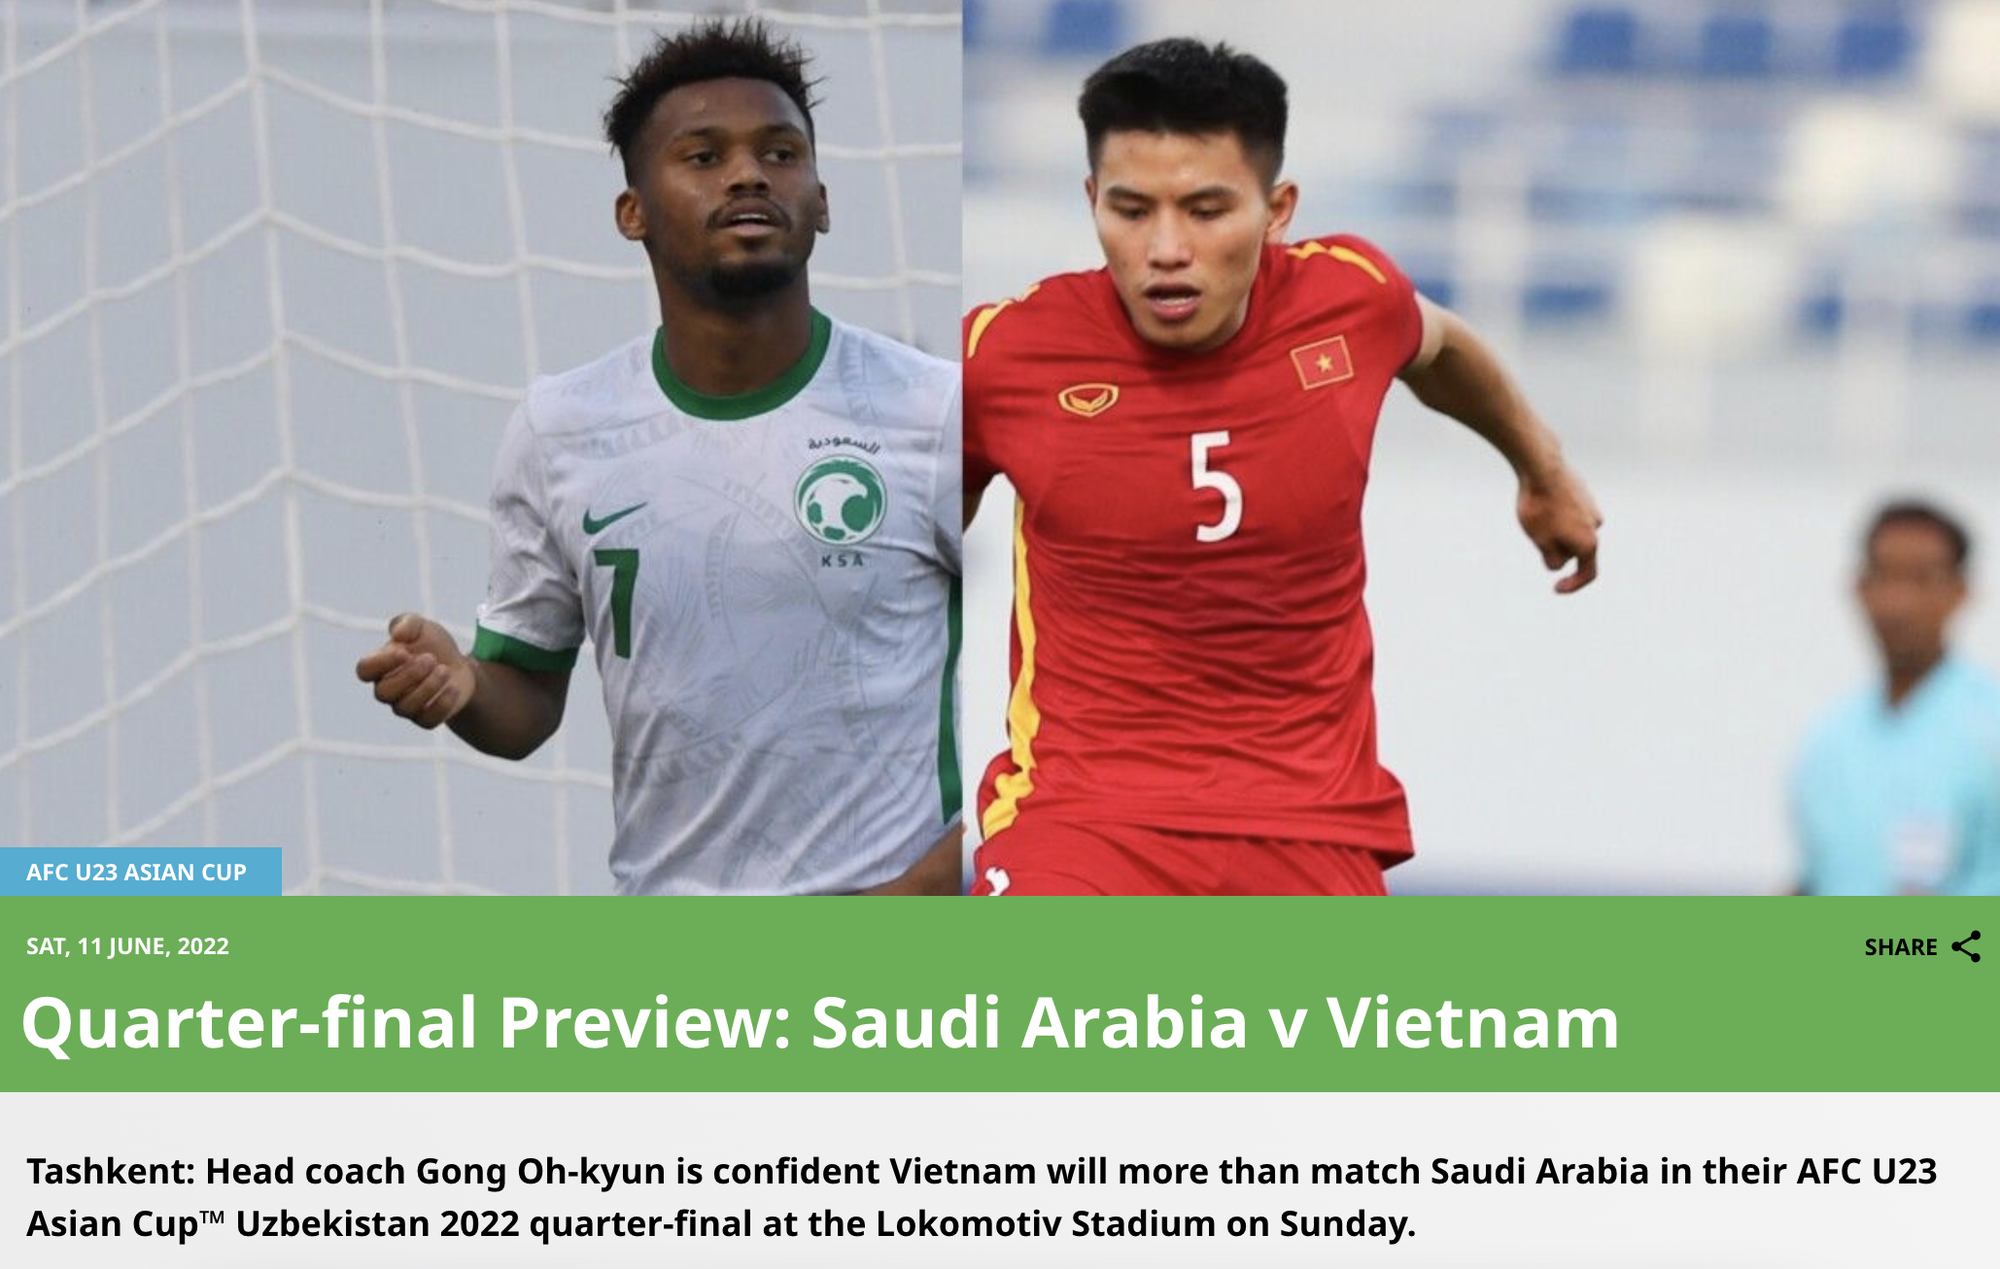 Trận đấu giữa U23 Việt Nam và U23 Ả Rập Saudi đã thu hút sự chú ý của báo châu Á khi được U23 Việt Nam chiến thắng 2-1 sau cuộc đua dưới cơ căng thẳng. Hãy cùng xem lại những khoảnh khắc đáng nhớ thông qua những bức ảnh Việt Nam đầy cảm xúc.